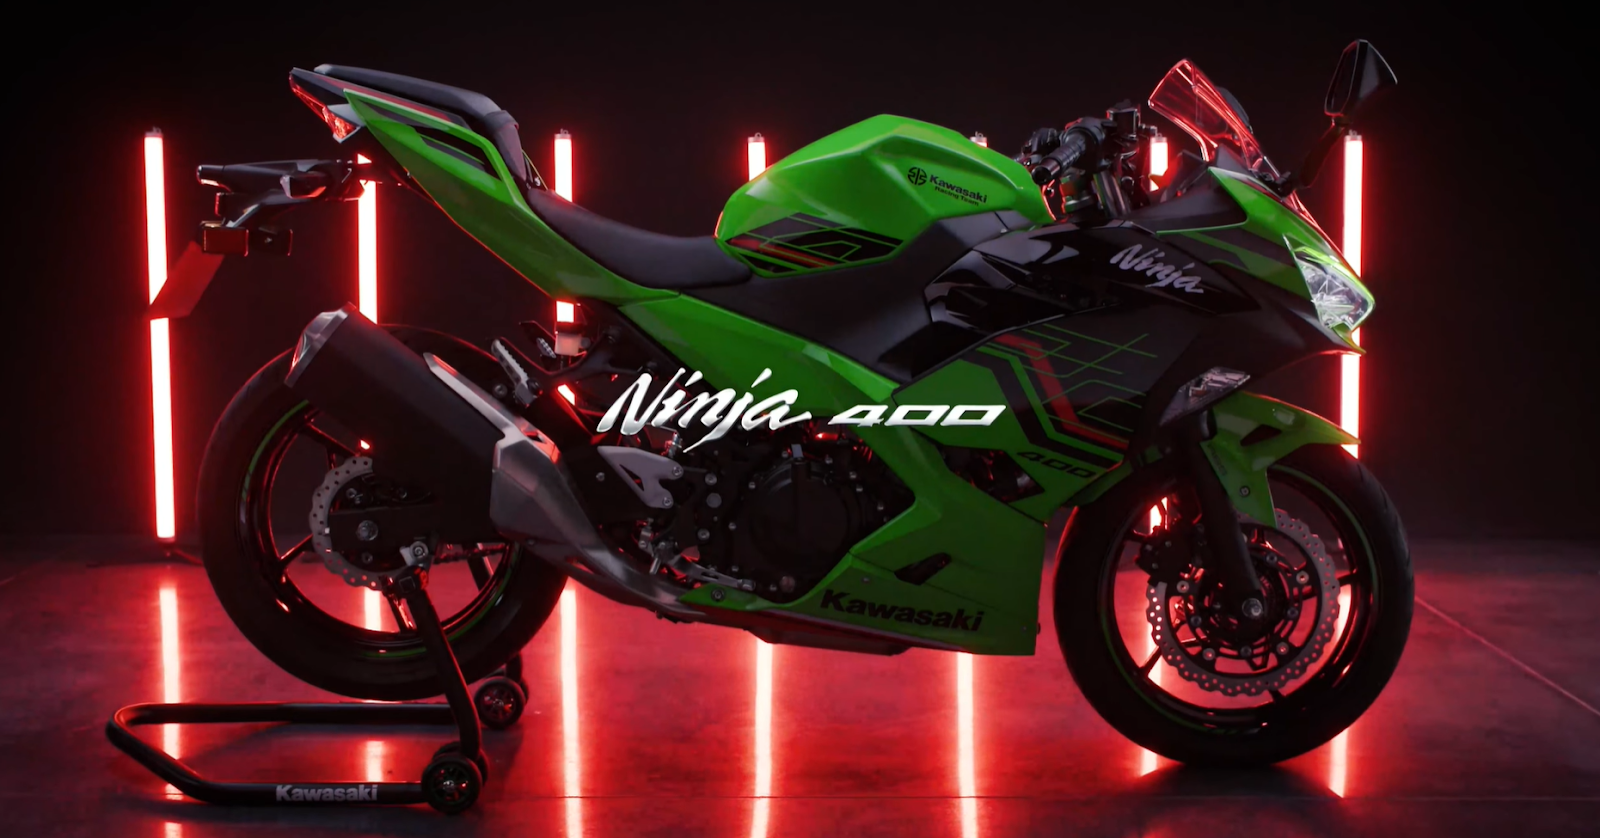 A Kawasaki Ninja 400 displayed with dramatic red lighting in a dark studio